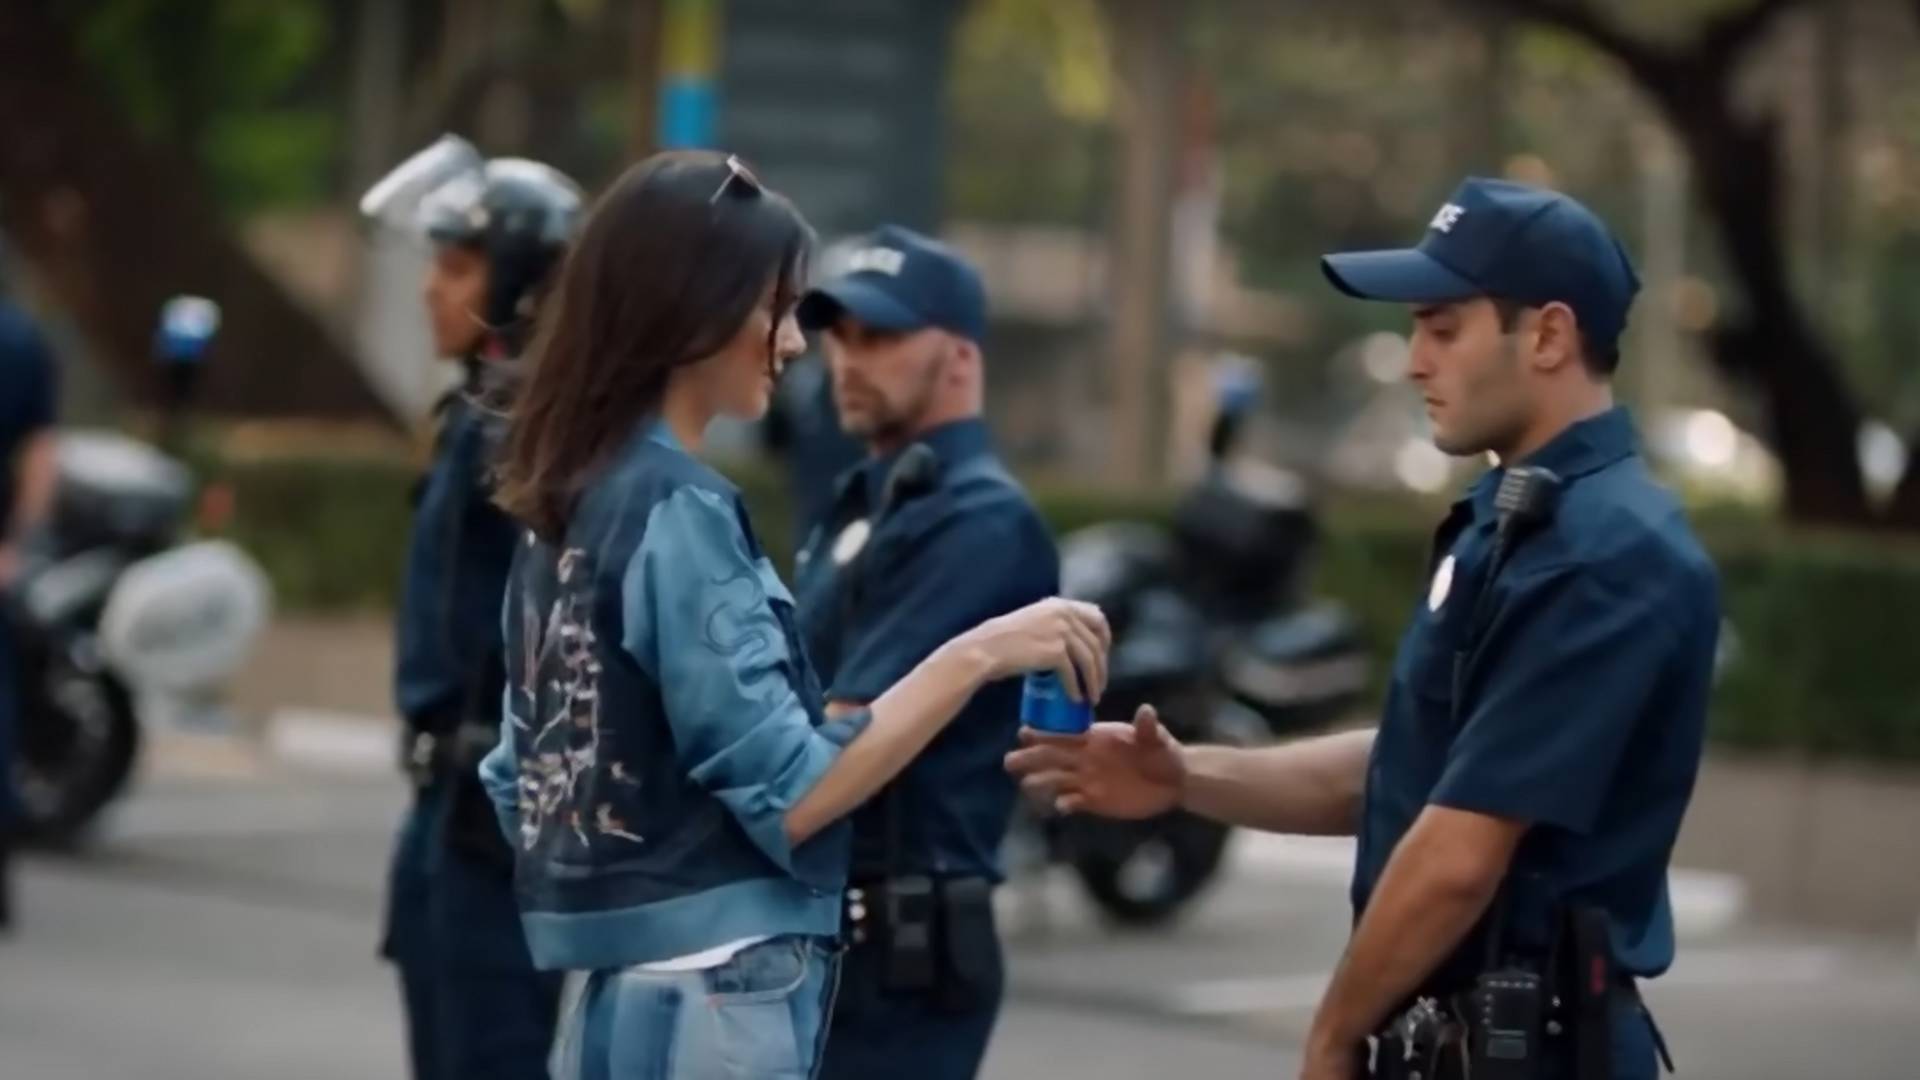 Sorry Pepsi, ale nie tak walczy się o prawa. Skandaliczna reklama z Kendall